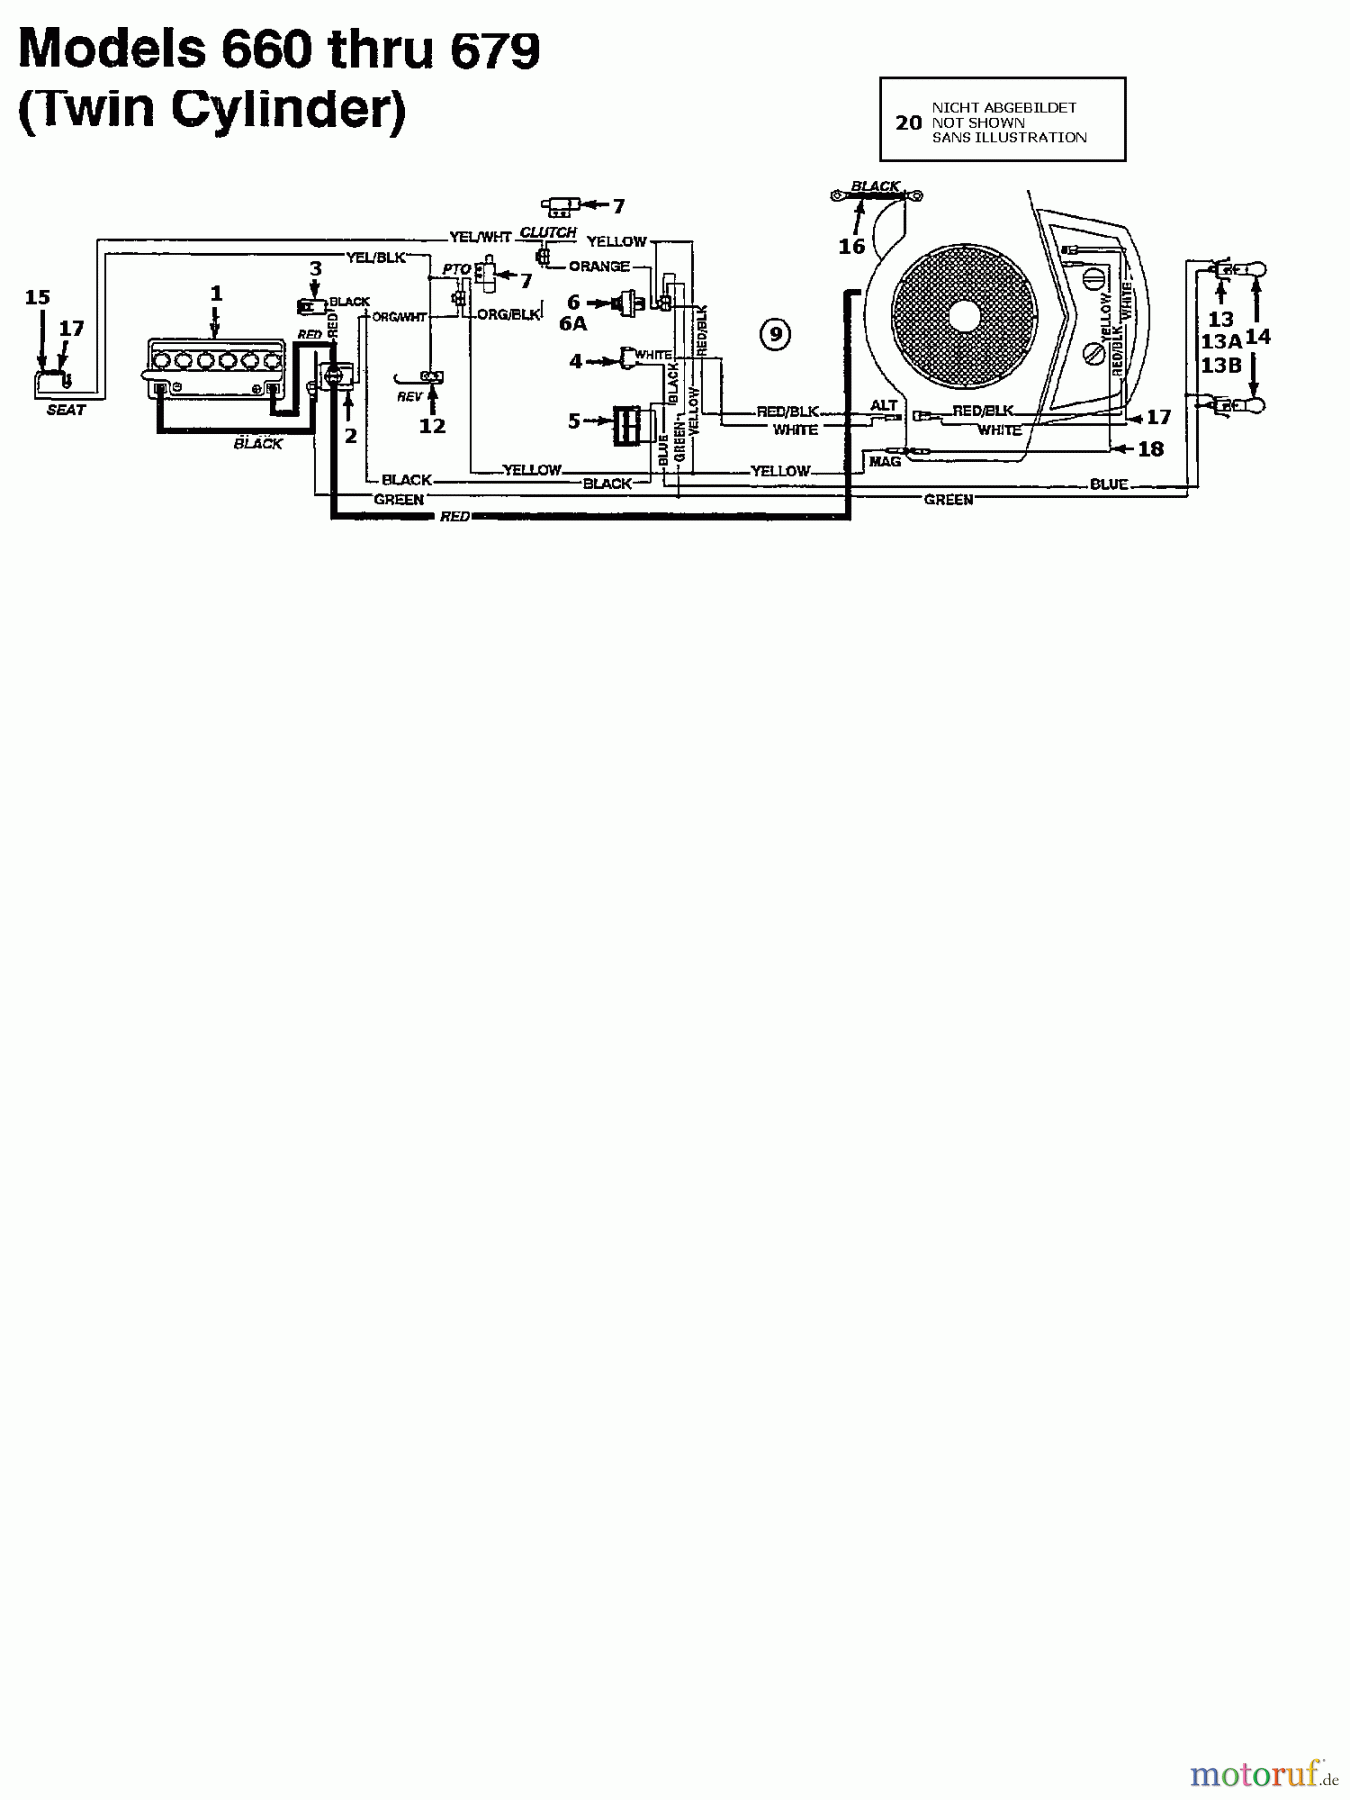  Agria Tracteurs de pelouse 4600/96 134K679F609  (1994) Plan électrique 2 cylindre